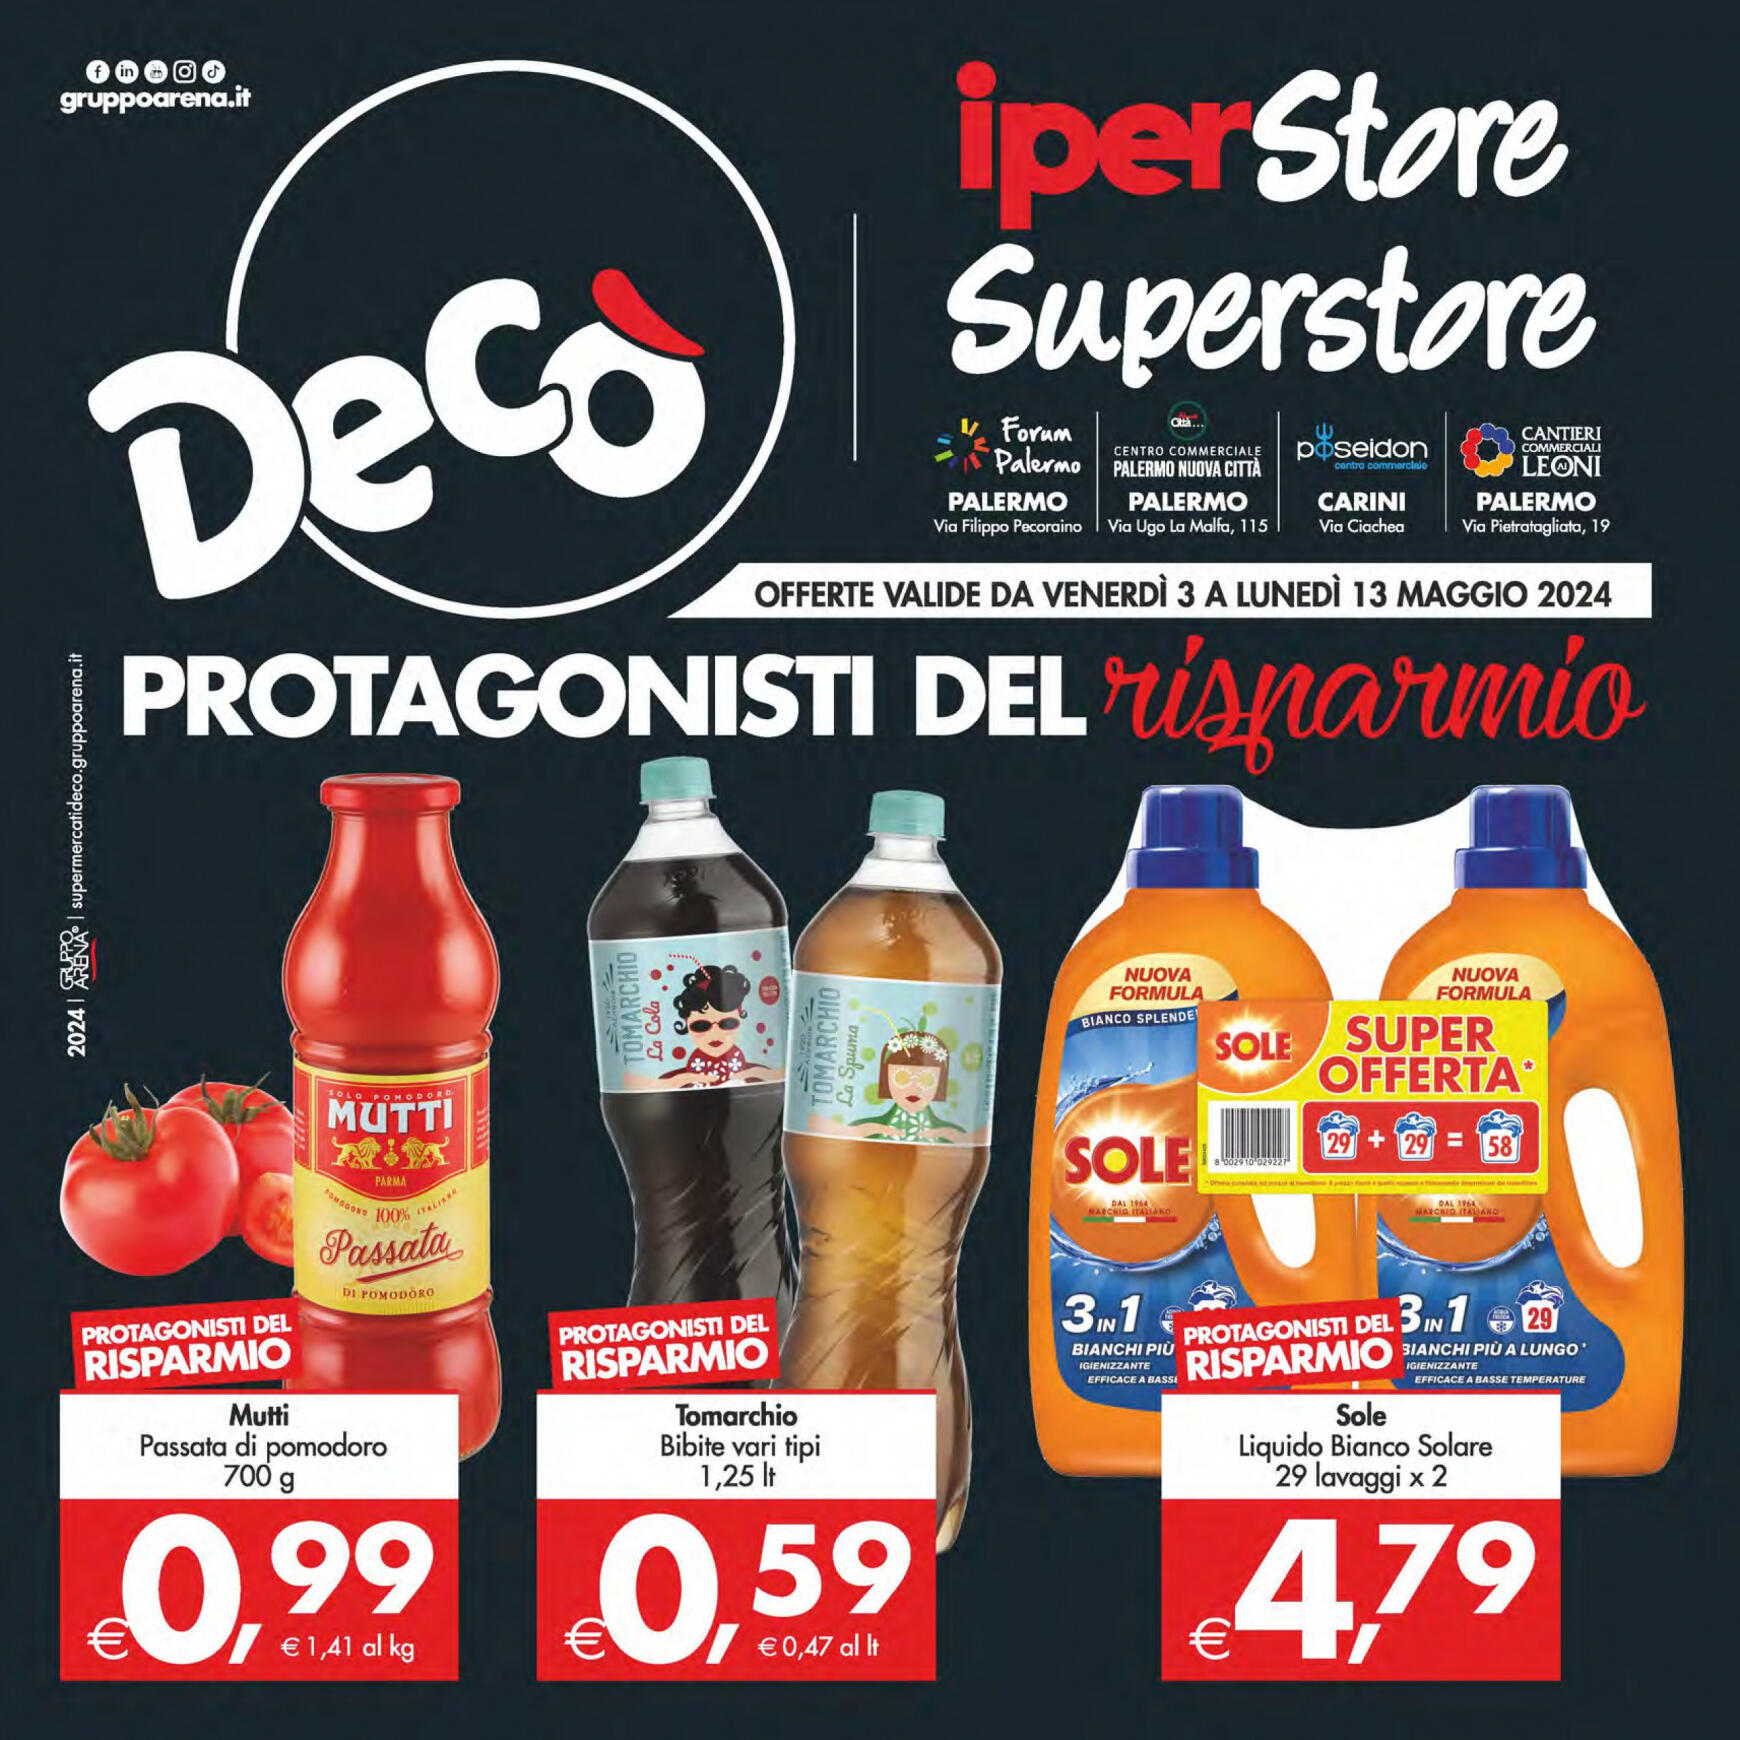 deco - Nuovo volantino Decò - Iperstore/Superstore Deco' Palermo 03.05. - 13.05.